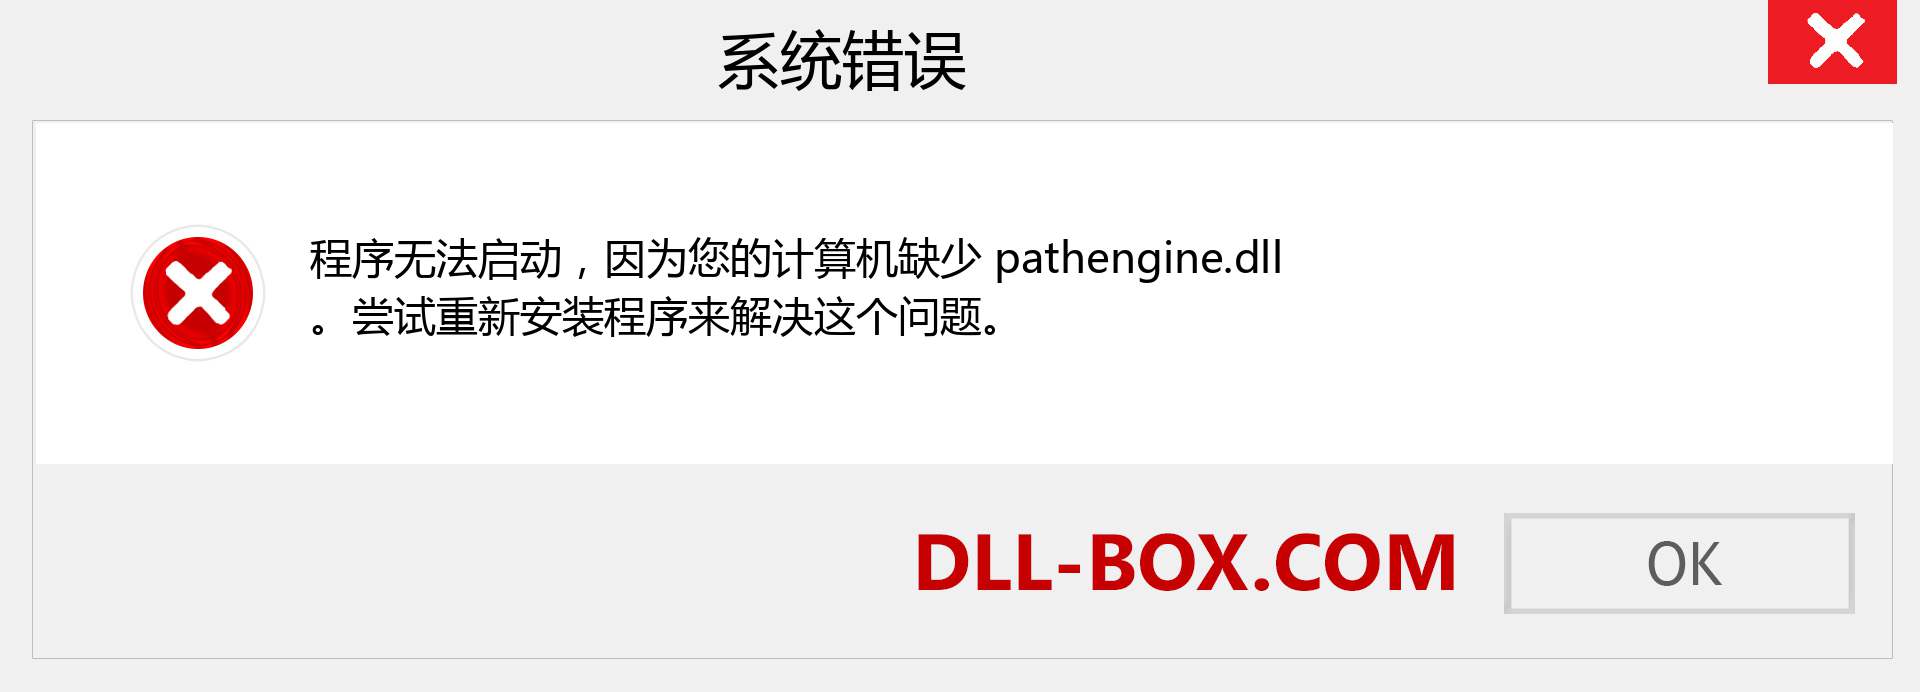 pathengine.dll 文件丢失？。 适用于 Windows 7、8、10 的下载 - 修复 Windows、照片、图像上的 pathengine dll 丢失错误